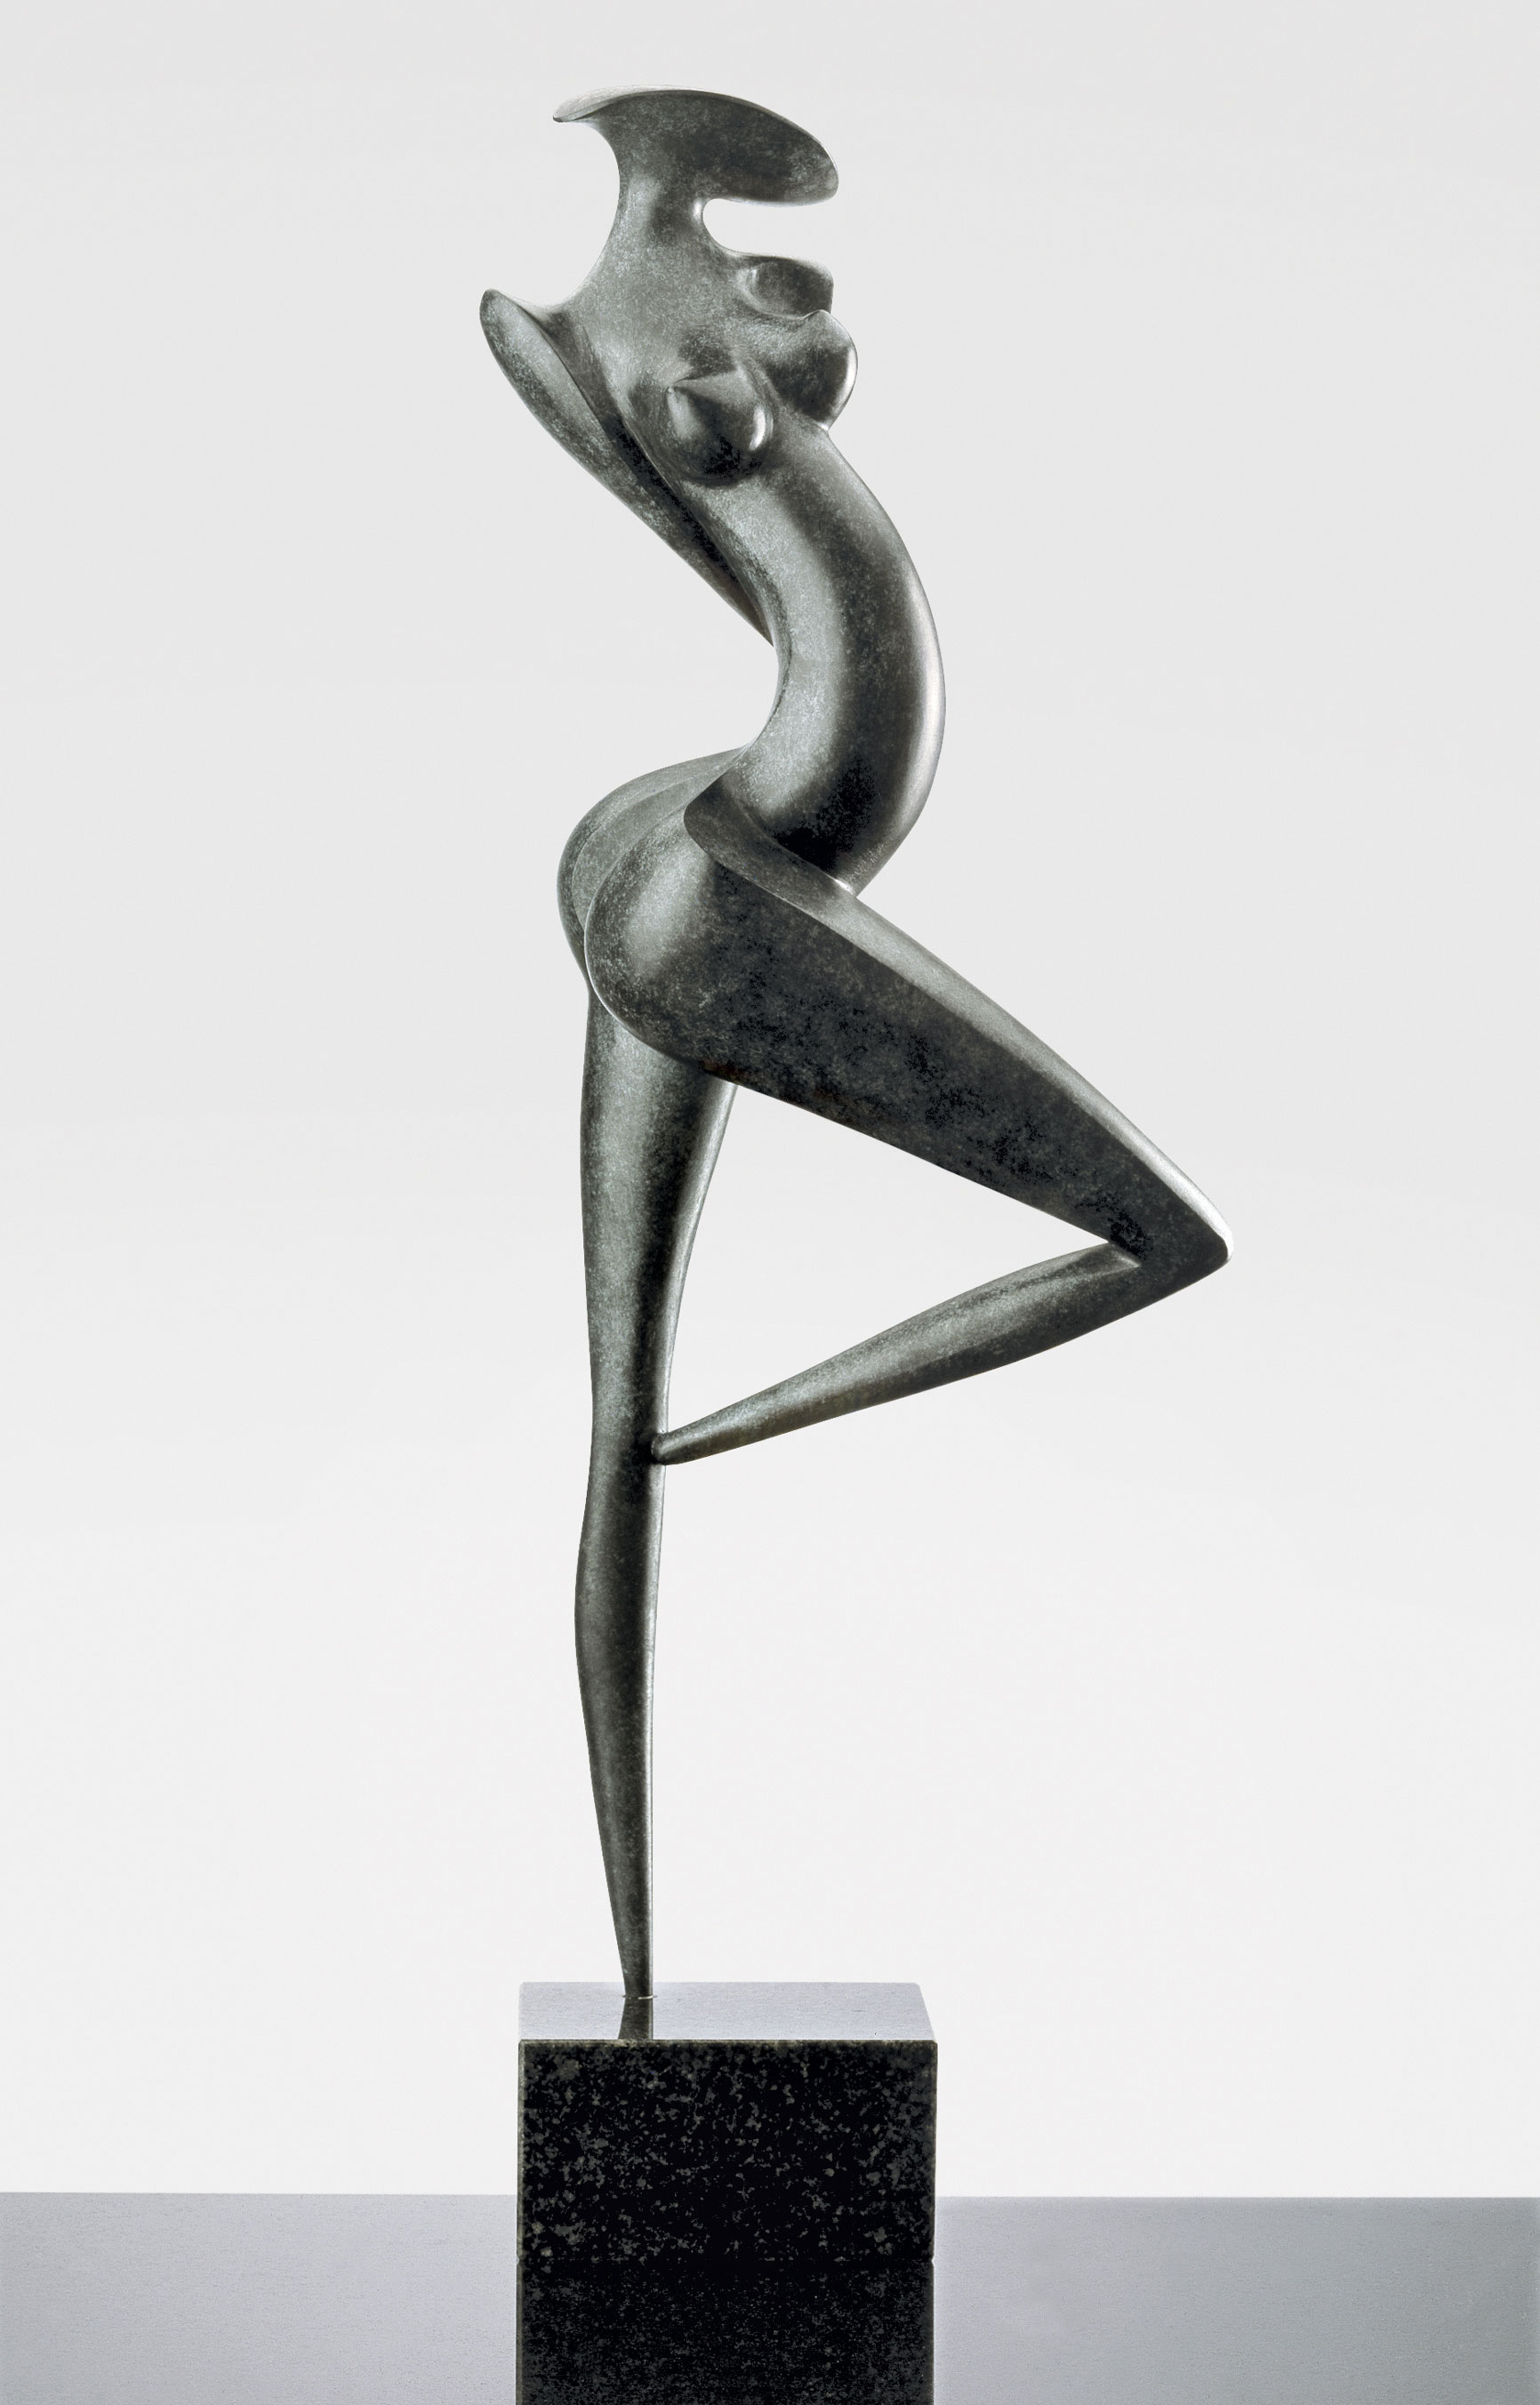 Danseuse, sculpture bronze de Marion Bürklé